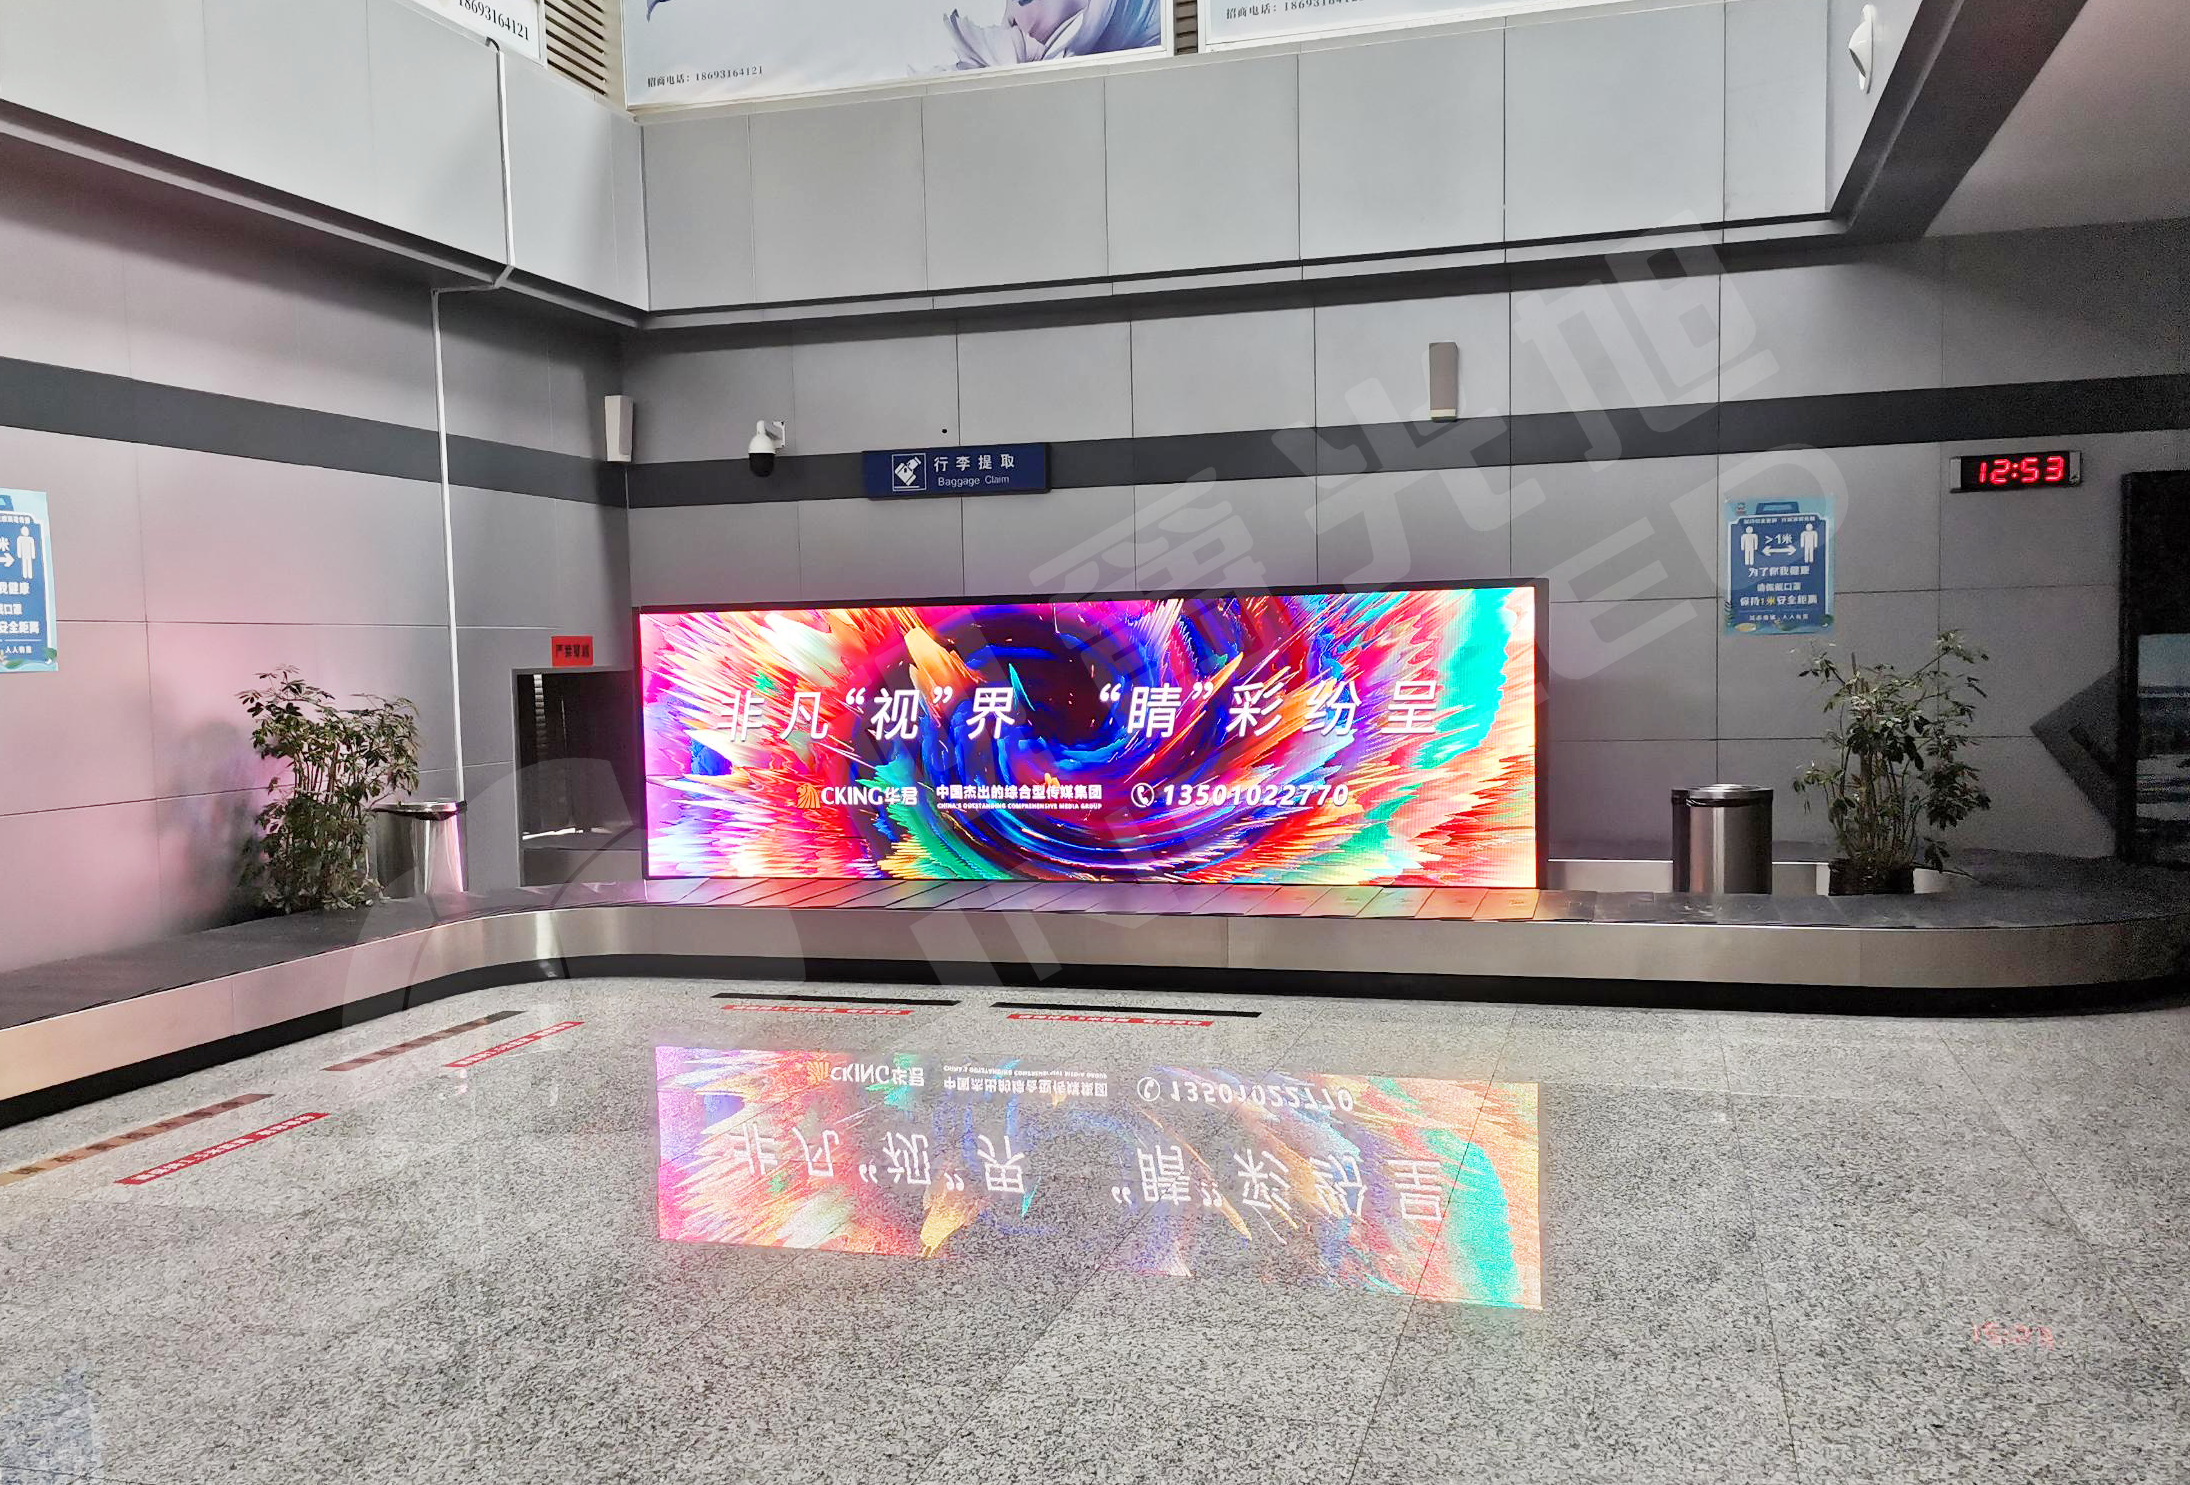 张掖甘州机场为进行机场信息化建设采用视爵光旭LED显示屏